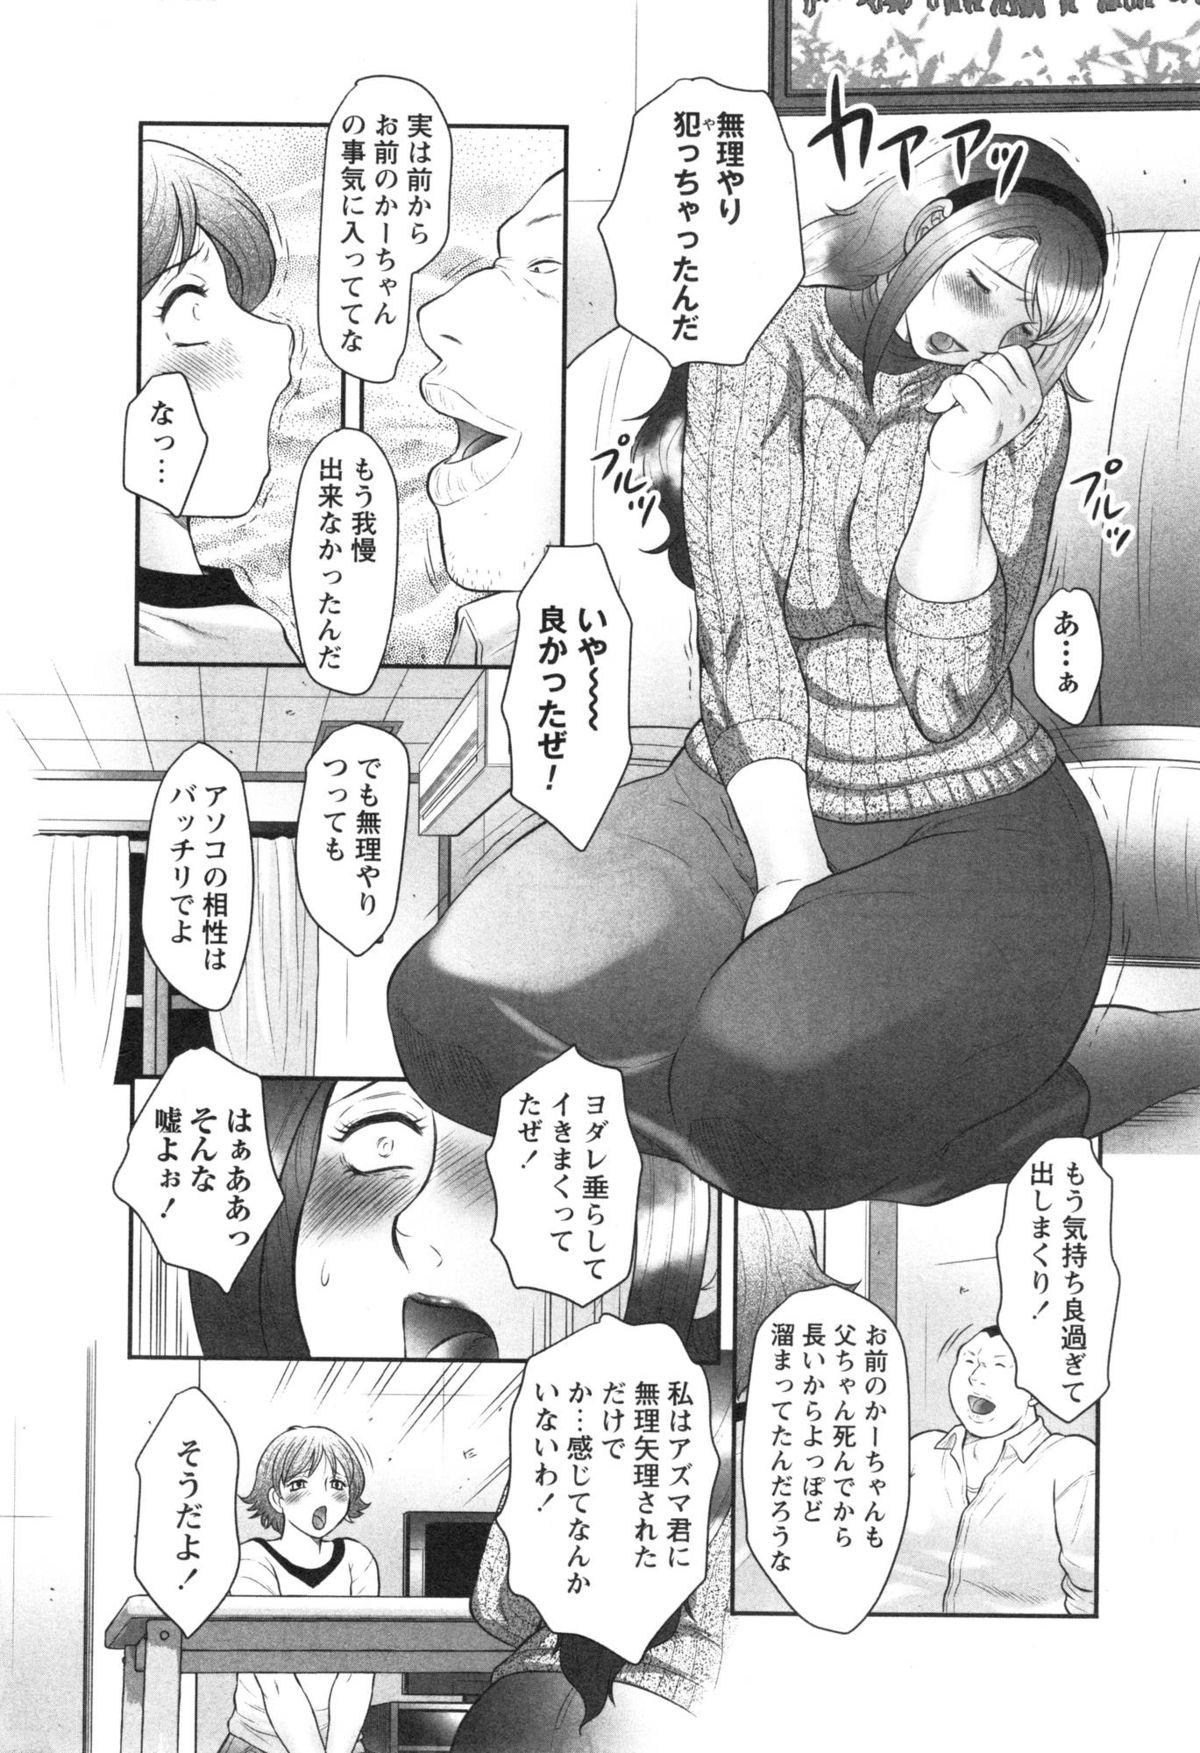 Sexy Makenai de Okaa-san! Nuru Massage - Page 2